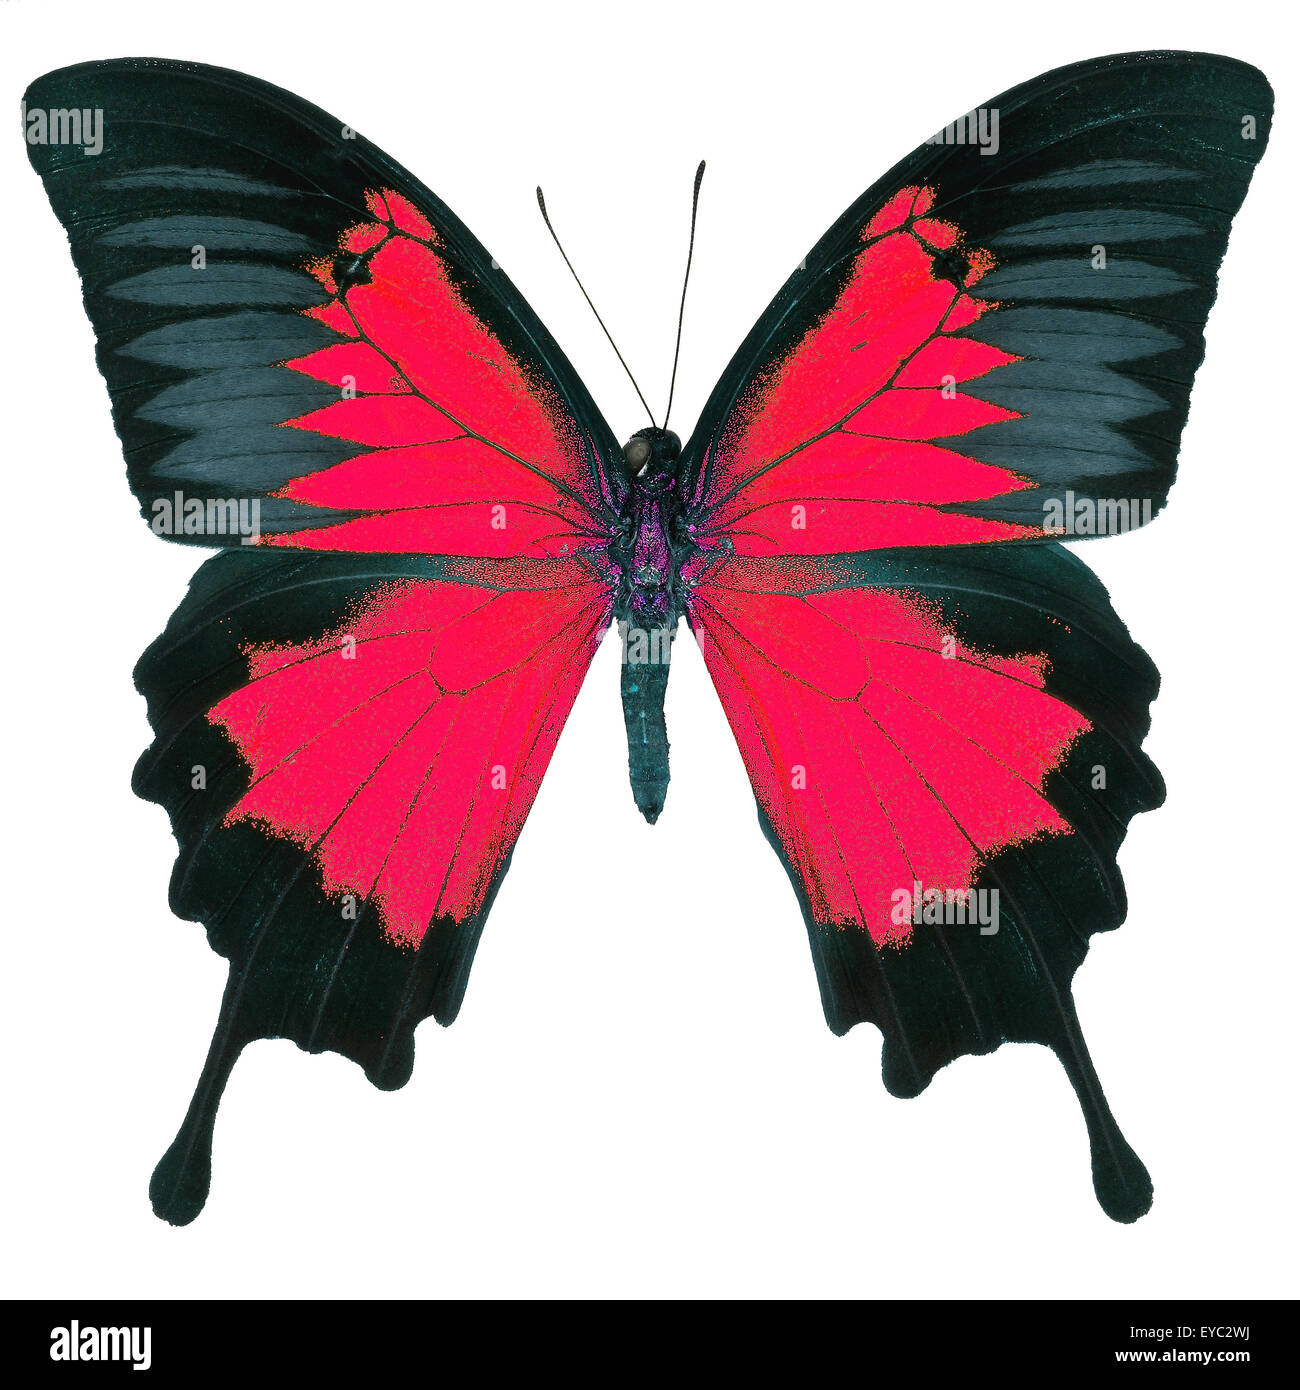 Beau papillon rouge, bleu, bleu de la montagne de l'empereur (Papilio ulysses) dans fantaisie profil de couleur, isolé sur fond blanc Banque D'Images